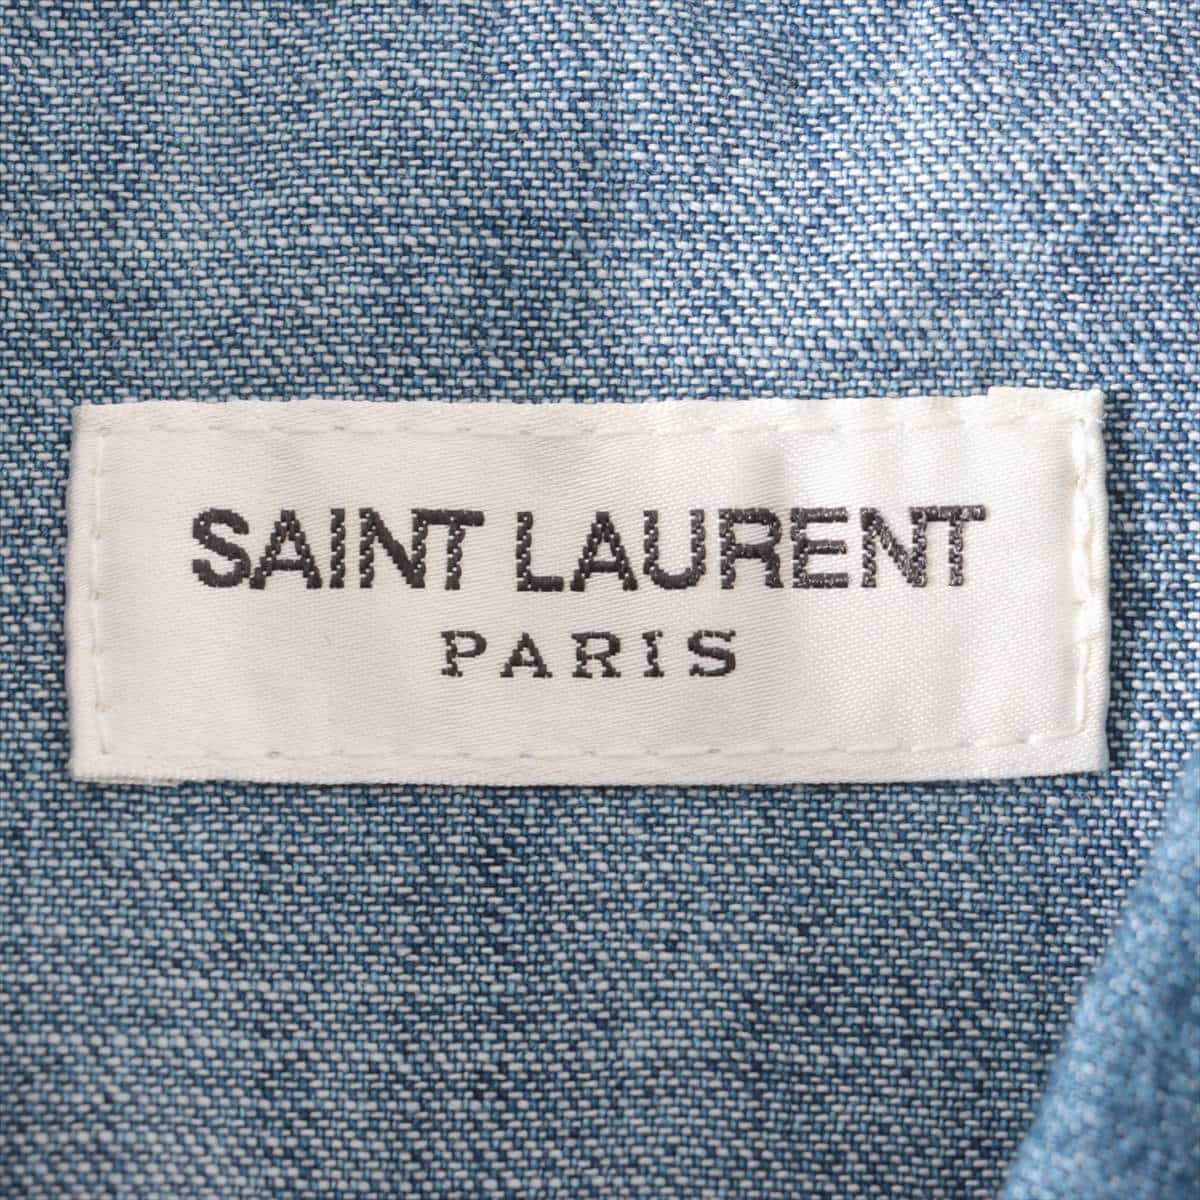 Saint Laurent Paris 18 years Cotton Denim shirt XS Men's Blue